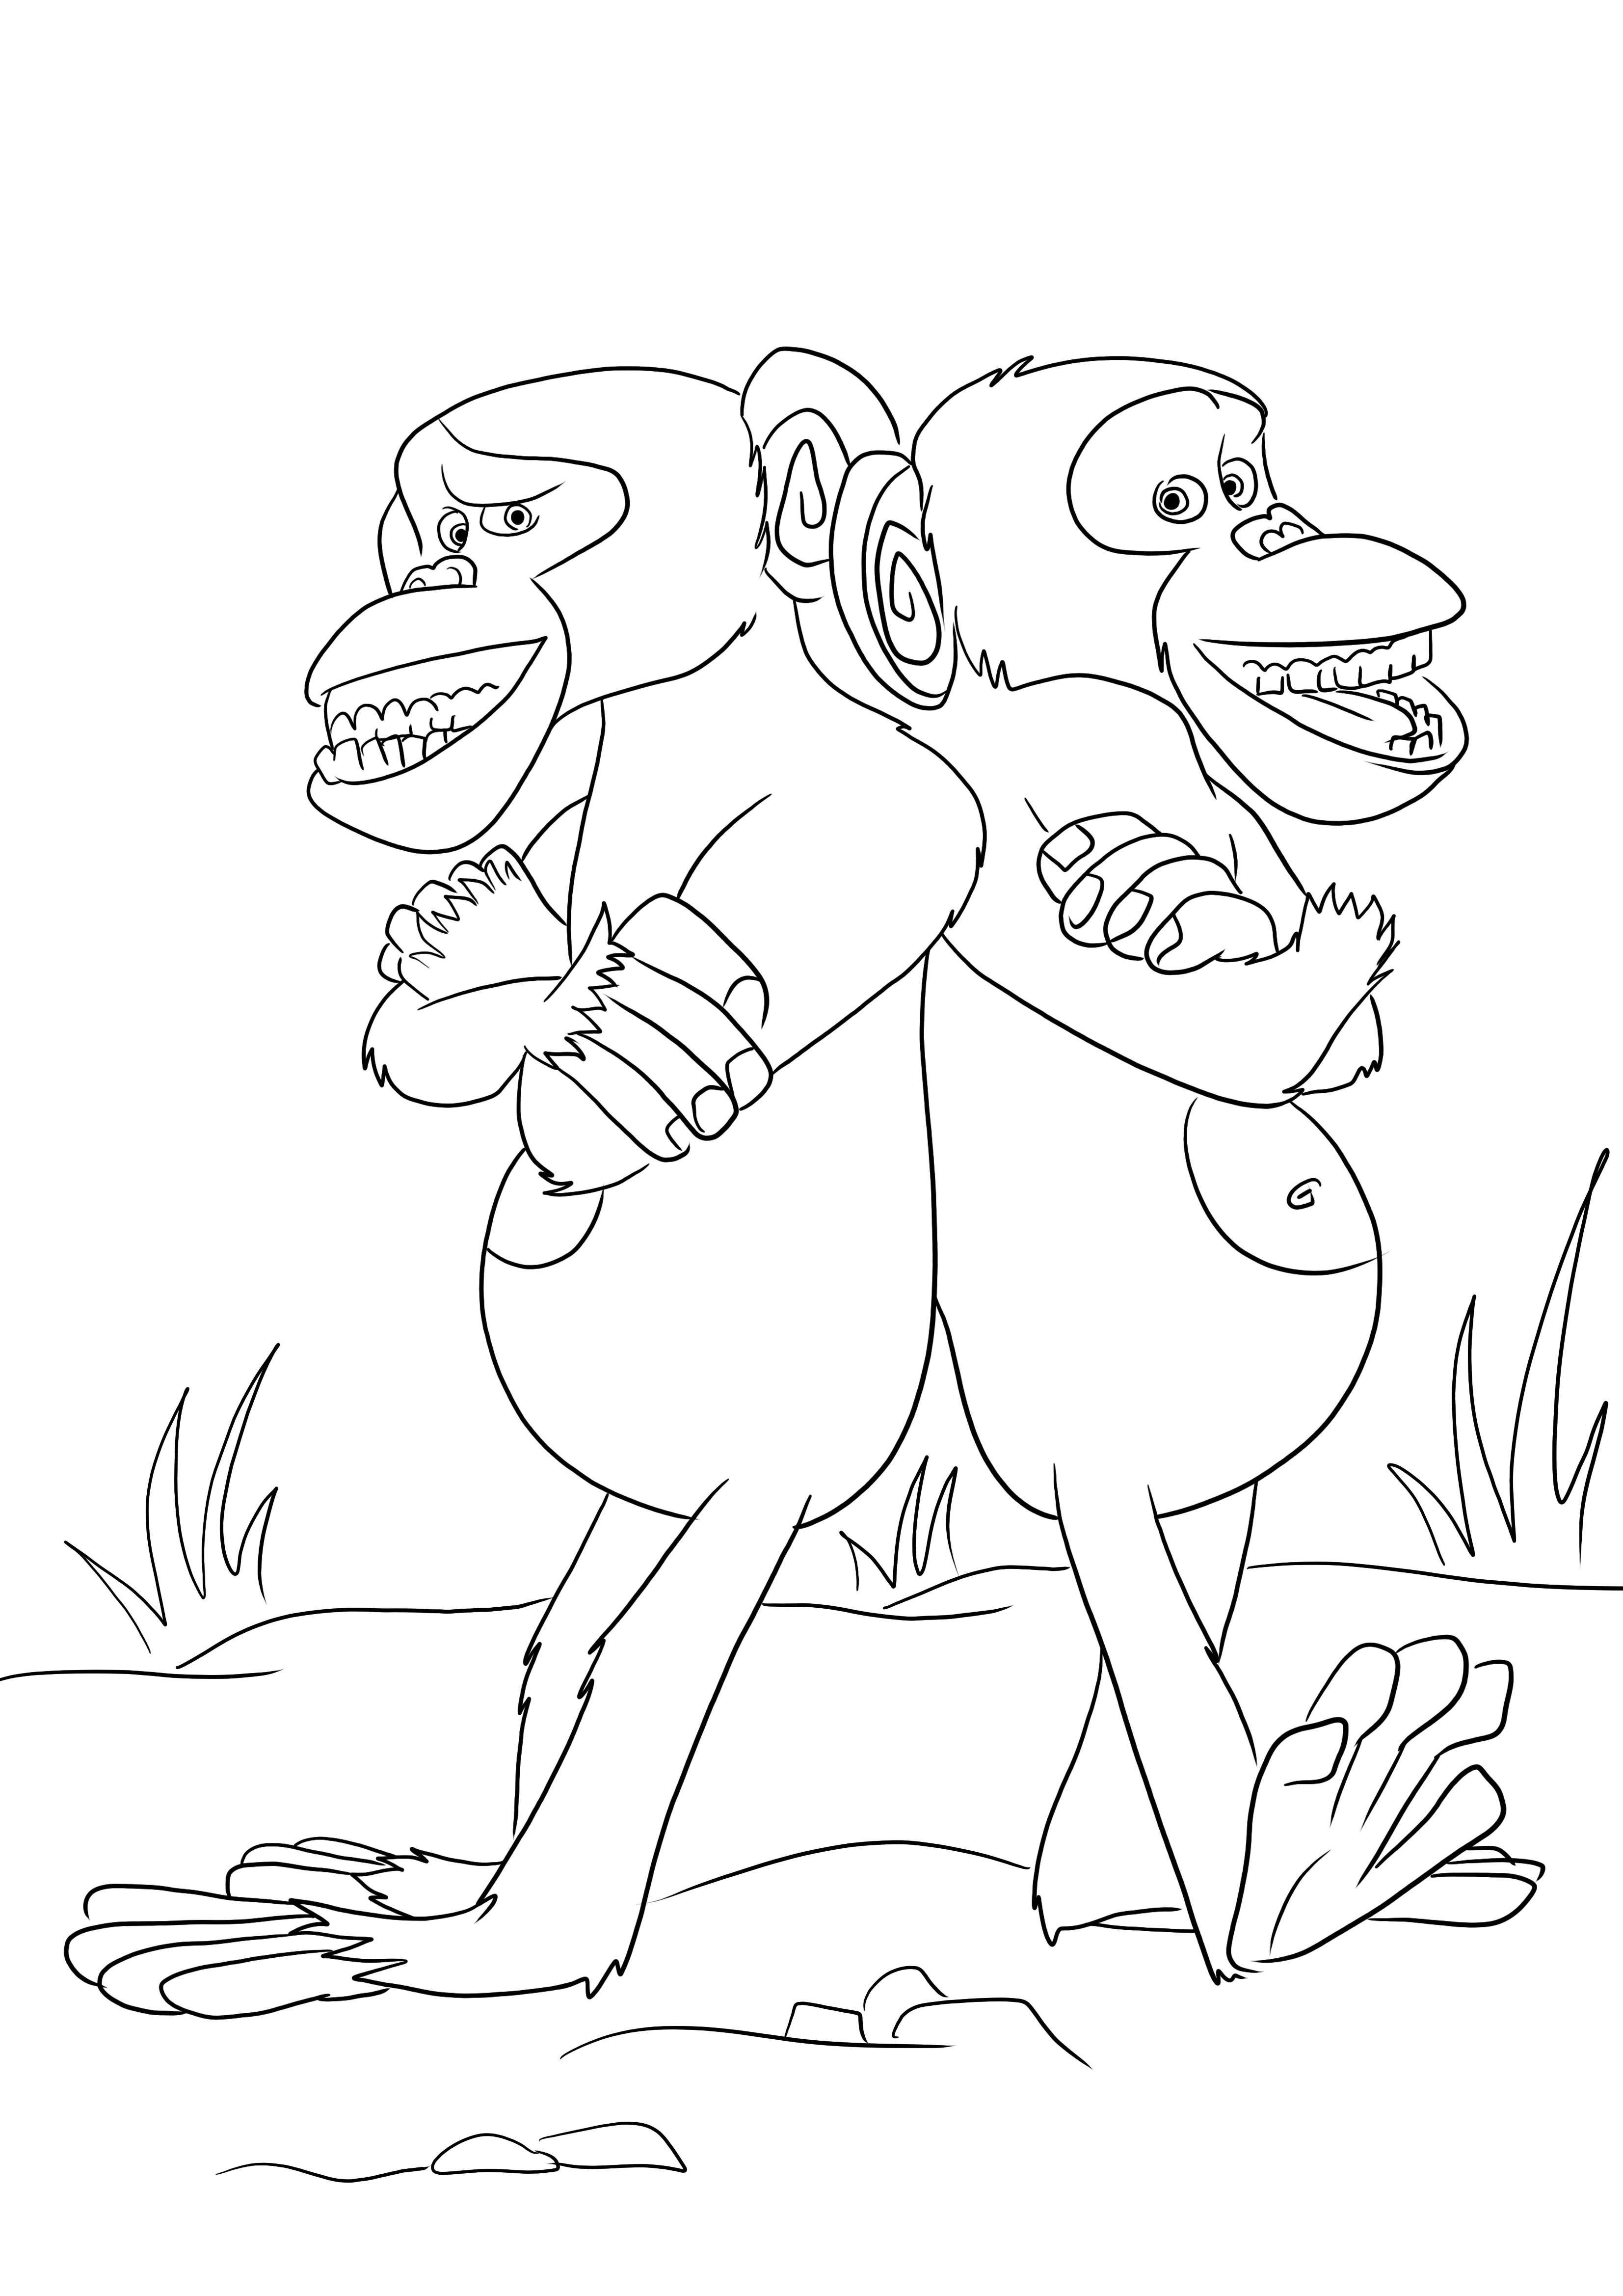 Mason és Phil-a két vicces majom színező kép ingyenesen letölthető